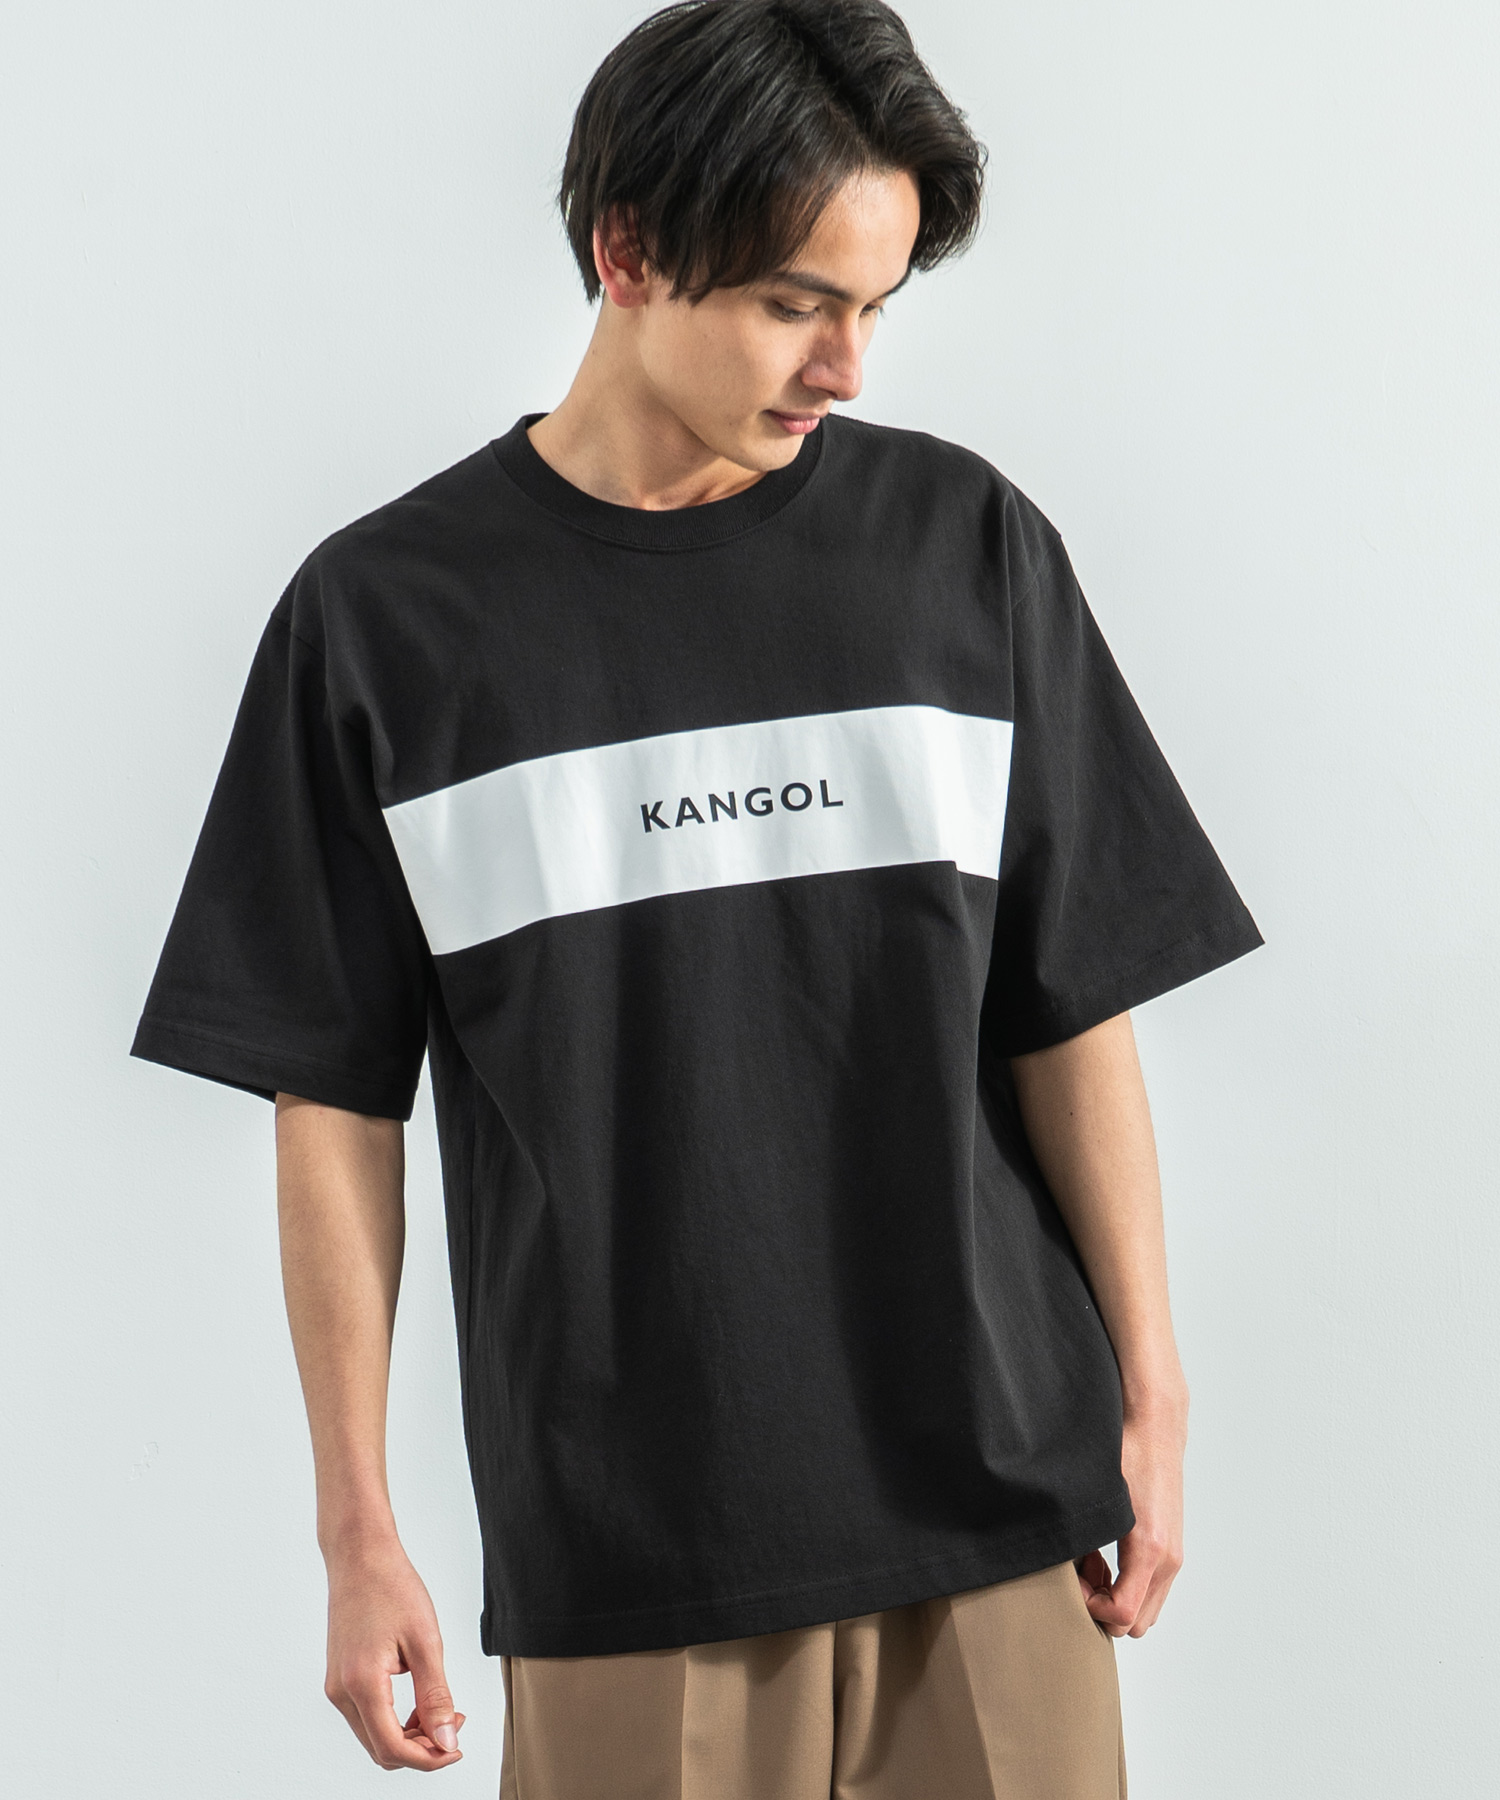 KANGOL カンゴール Tシャツ メンズ レディース USAコットン 米綿 半袖 